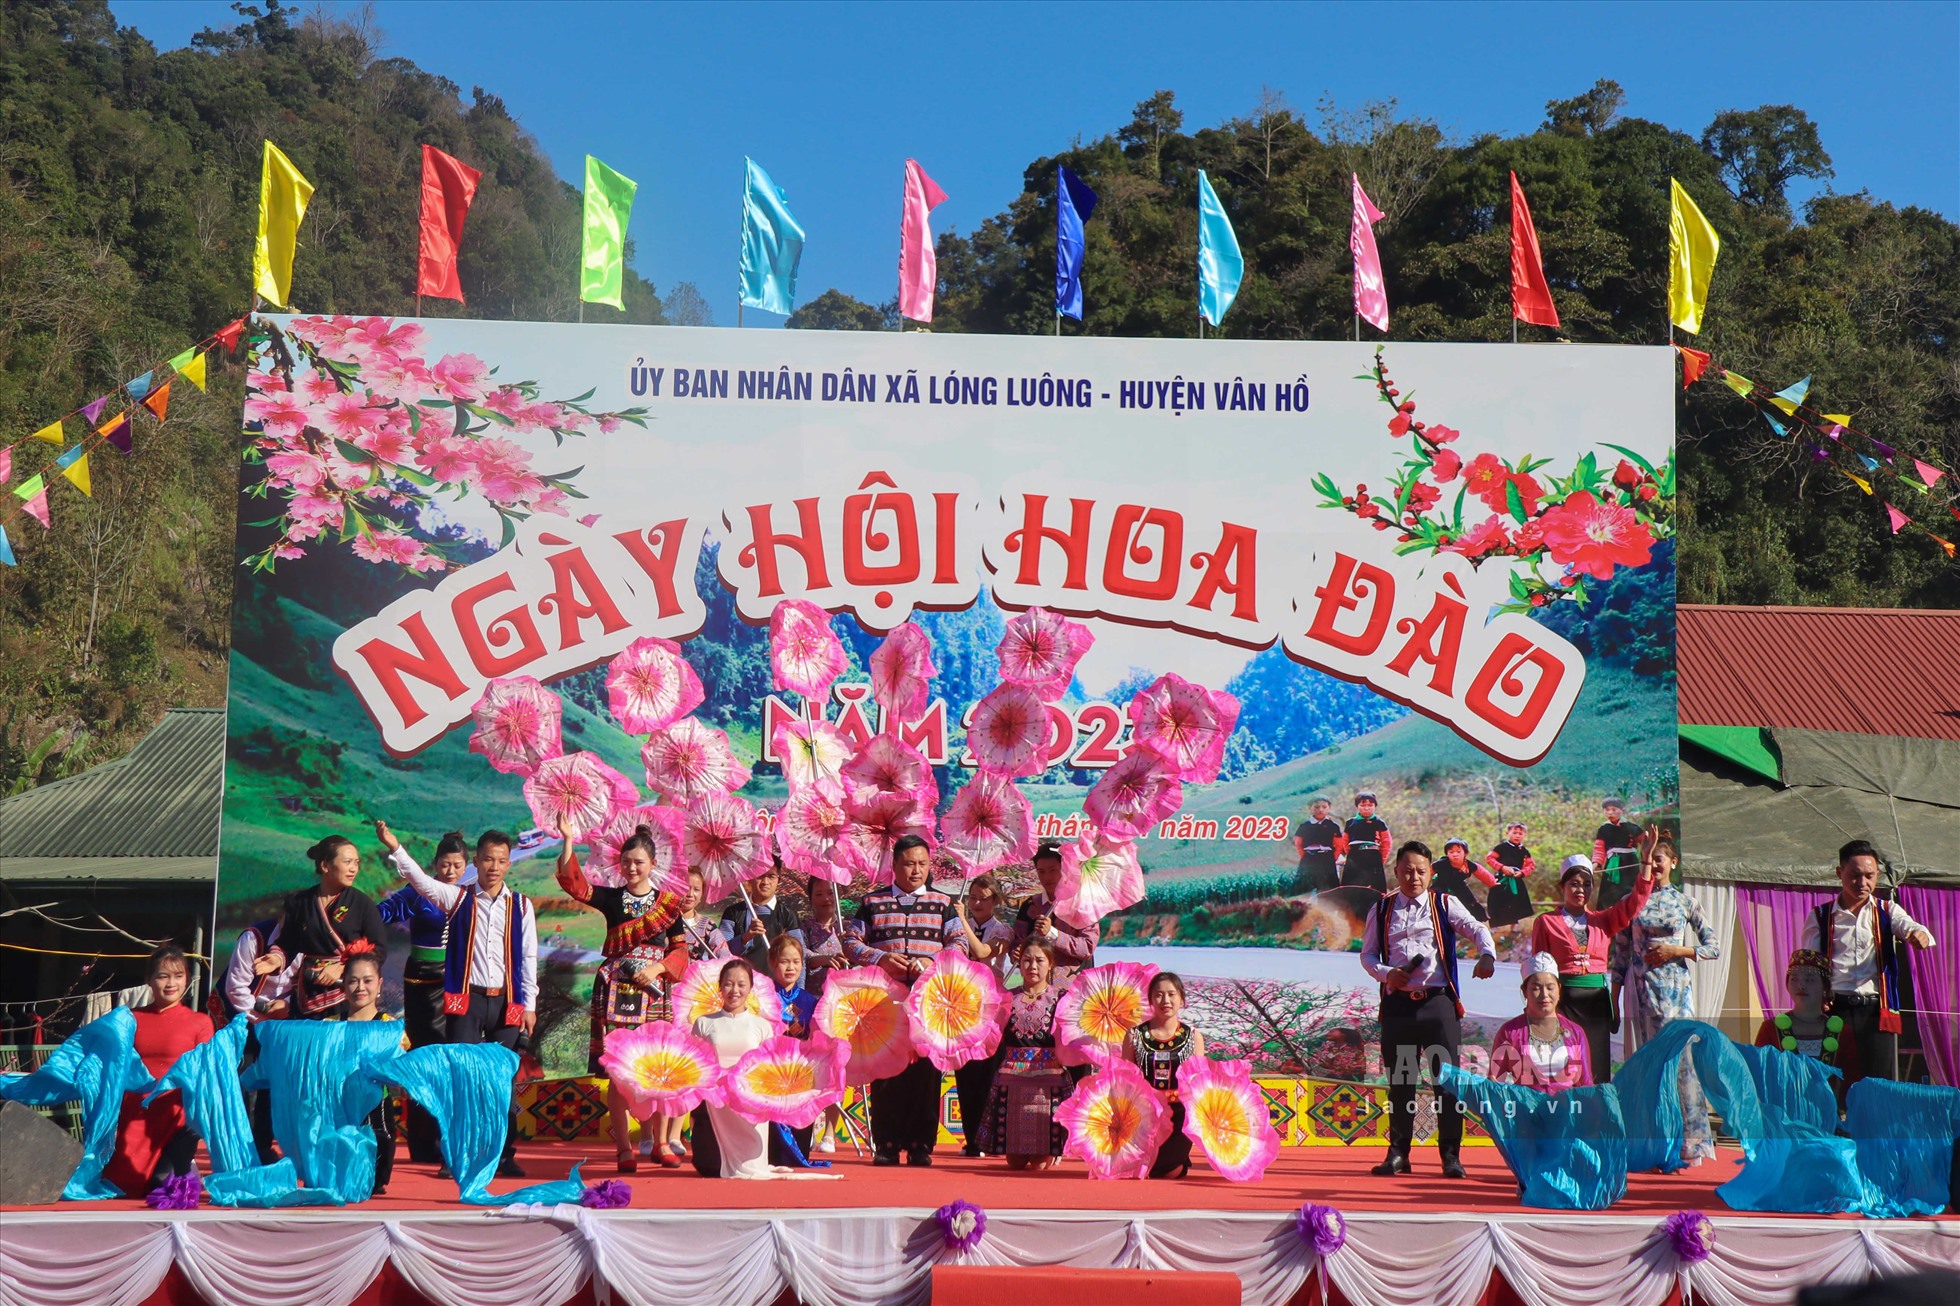 Đây là sự kiện diễn ra thường niên vào dịp cuối năm âm lịch nhằm quảng bá thương hiệu cây đào Vân Hồ, đồng thời tạo không gian giao lưu văn hóa, vui chơi cho người dân và du khách.